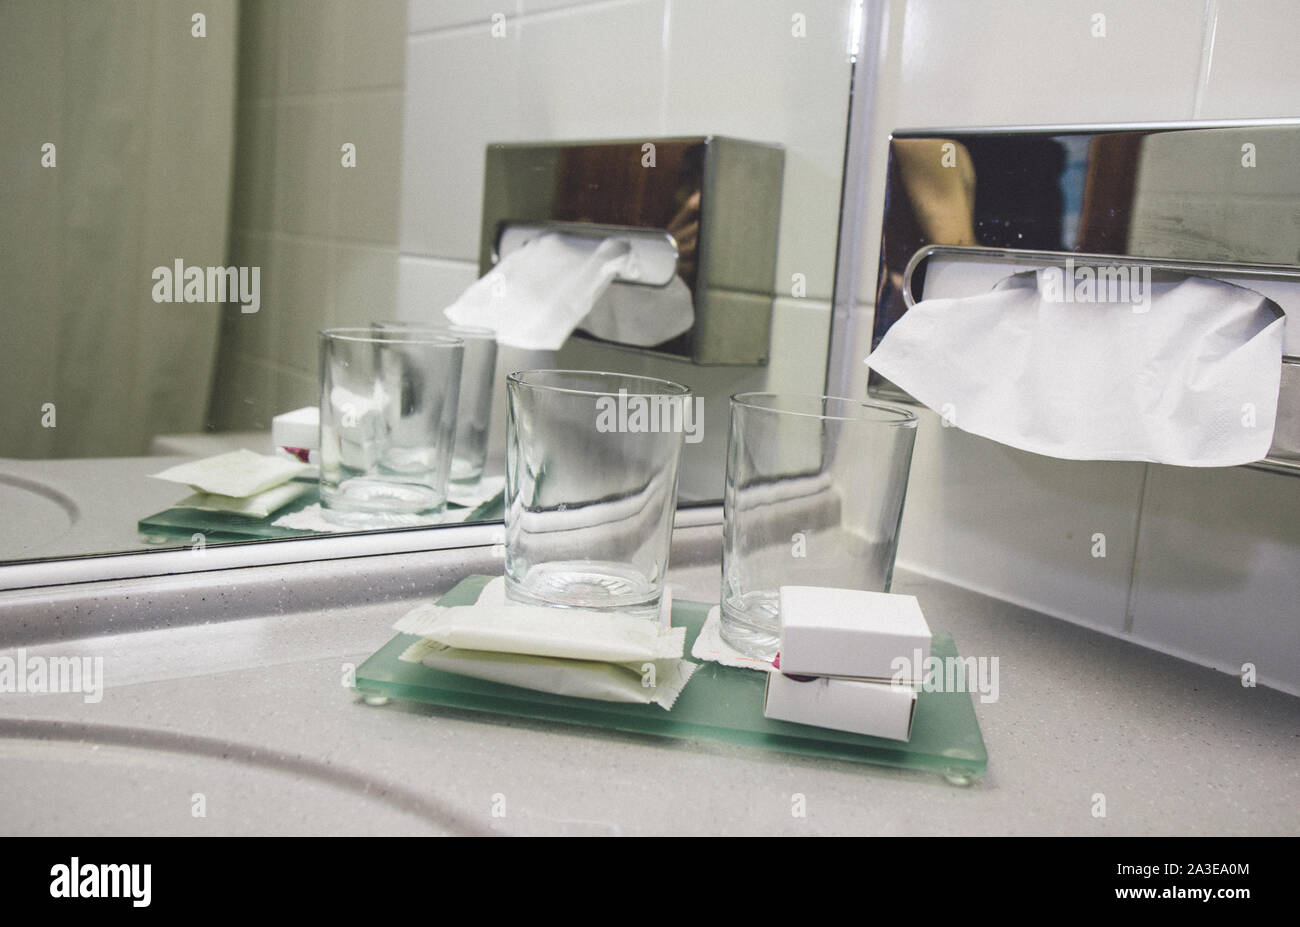 Rubinetto acqua in bagno moderno hotel di lusso di servizio per il tempo libero. Camera in hotel Servizio di lavaggio dentale vetro e sapone persona igieniche di lavaggio per la pulizia. Asciugamani di carta sh Foto Stock